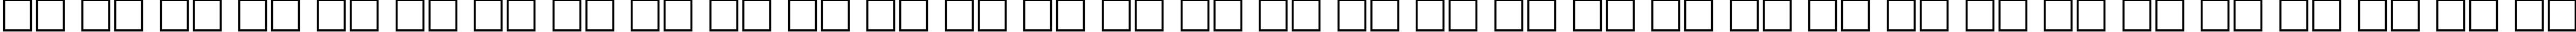 Пример написания русского алфавита шрифтом TextBookCTT Bold